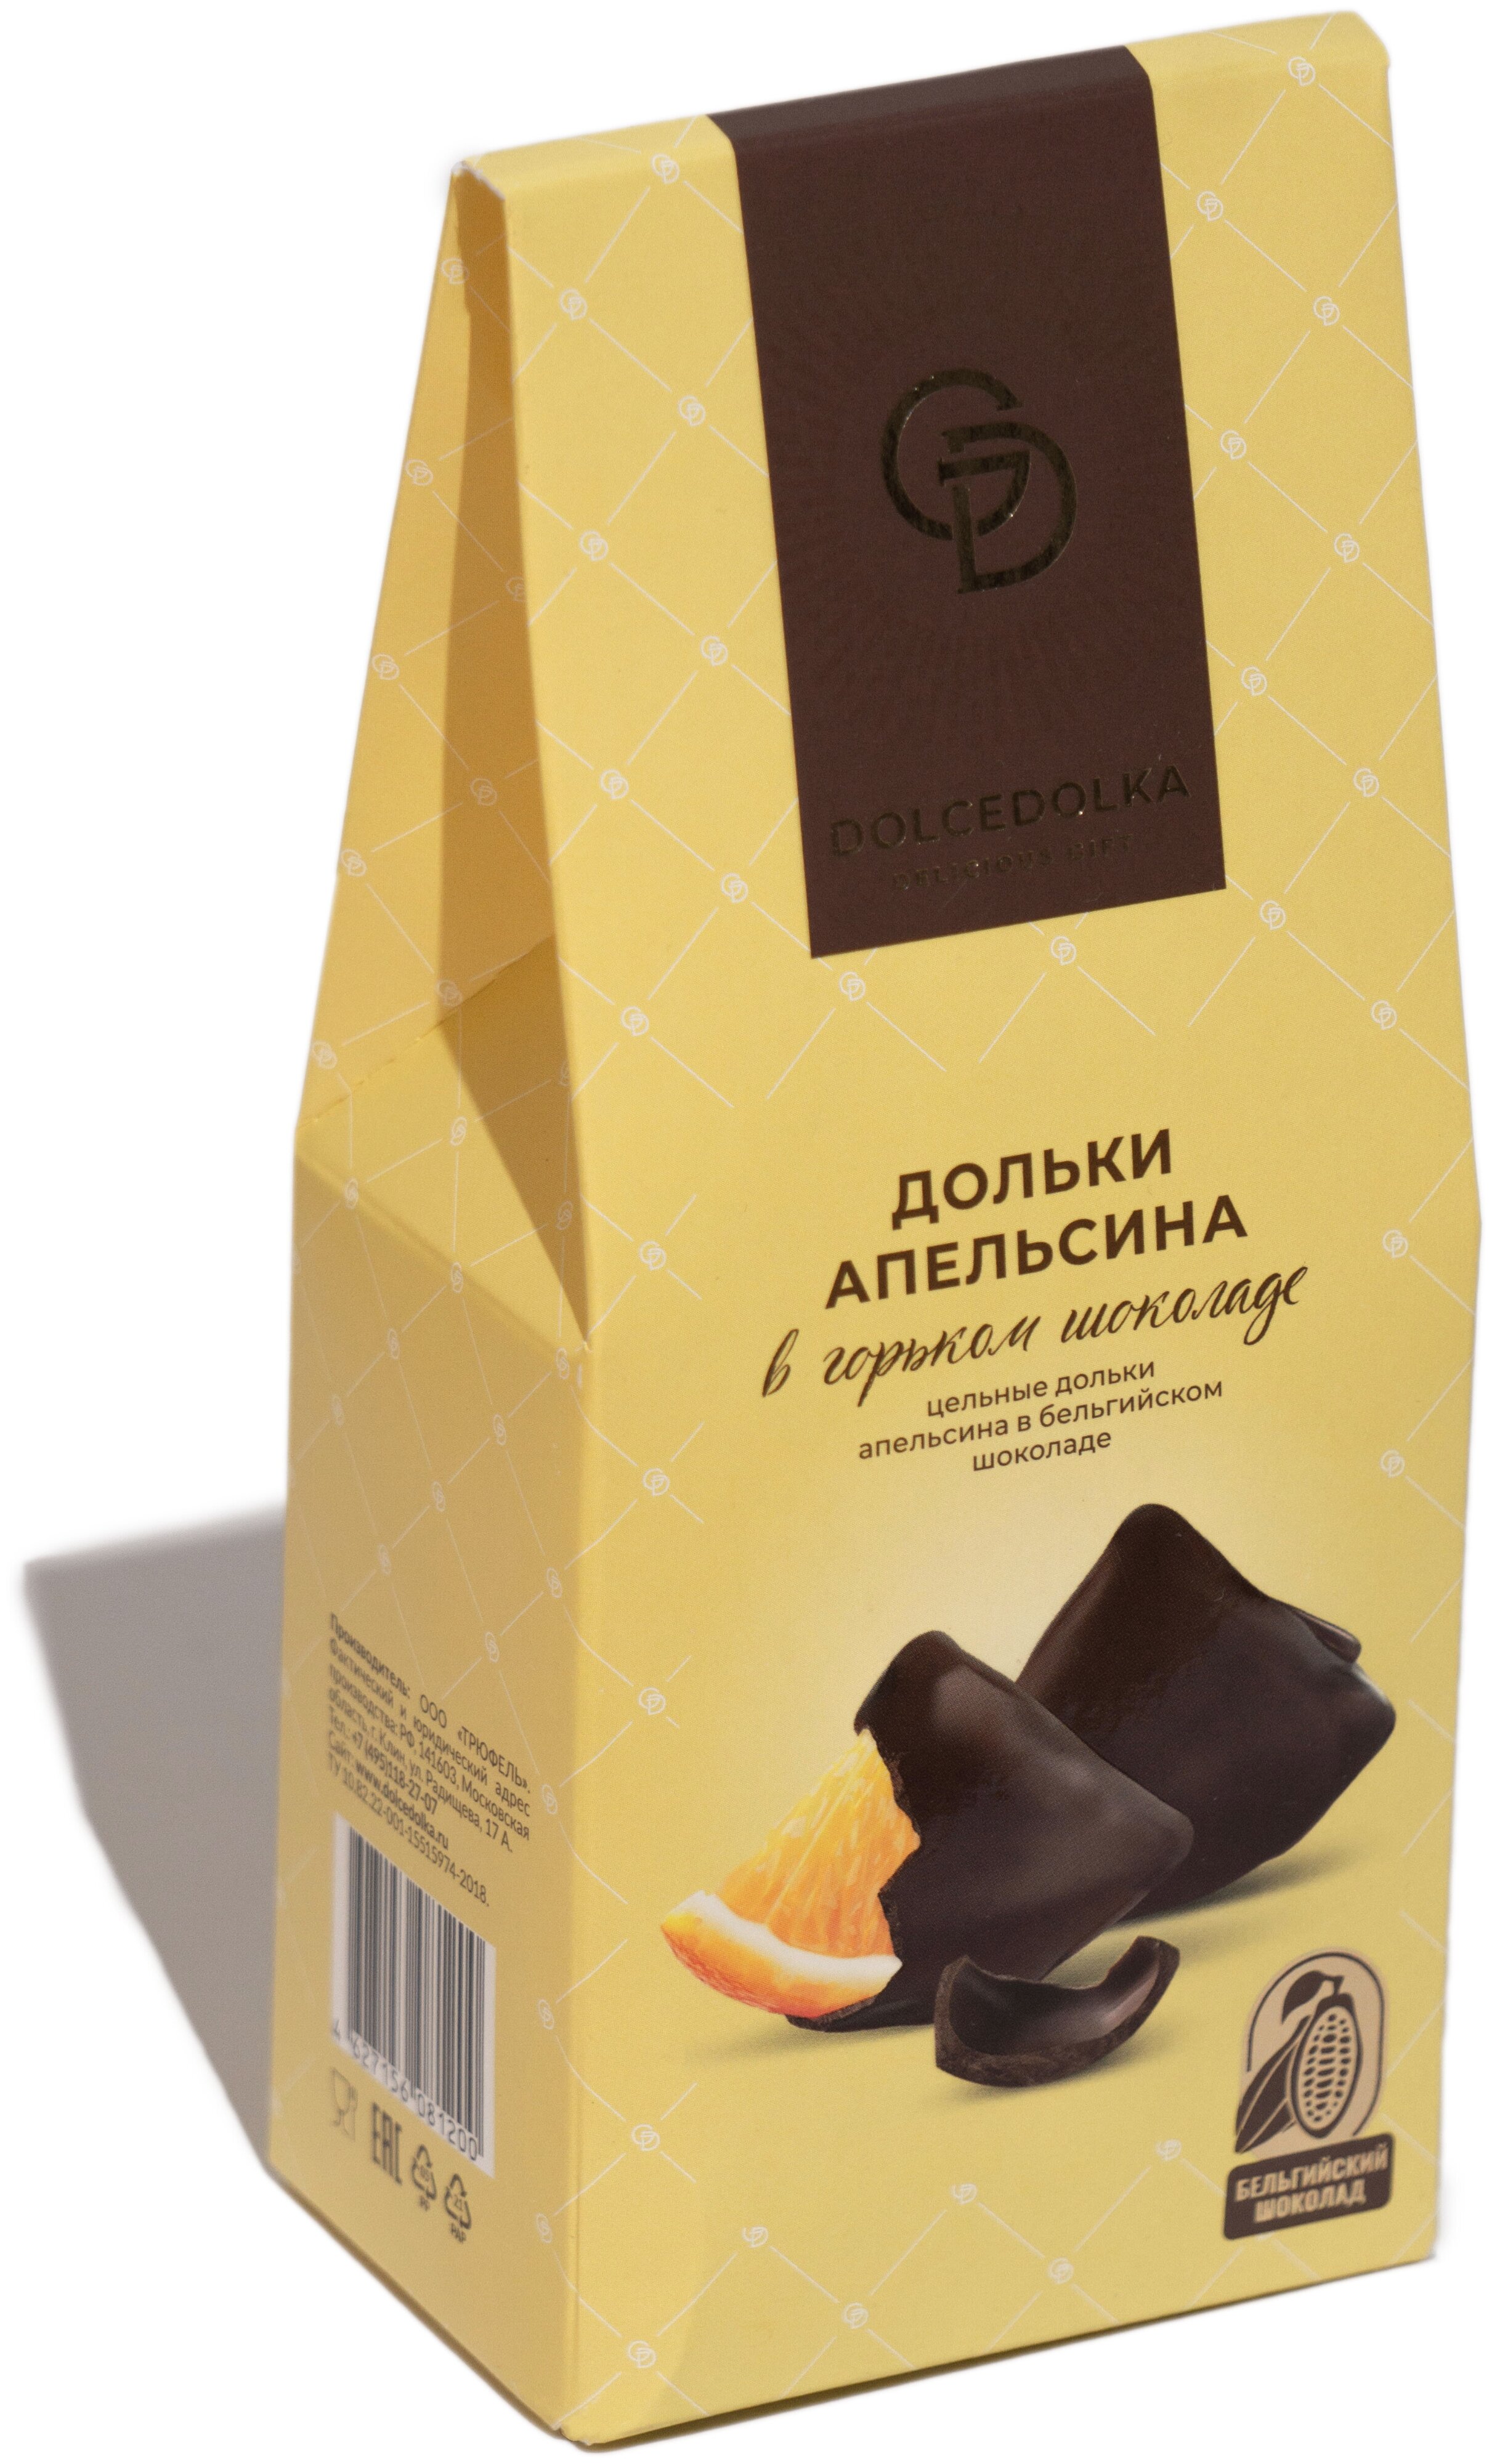 Конфеты Dolcedolka Дольки апельсина в горьком шоколаде 95 г